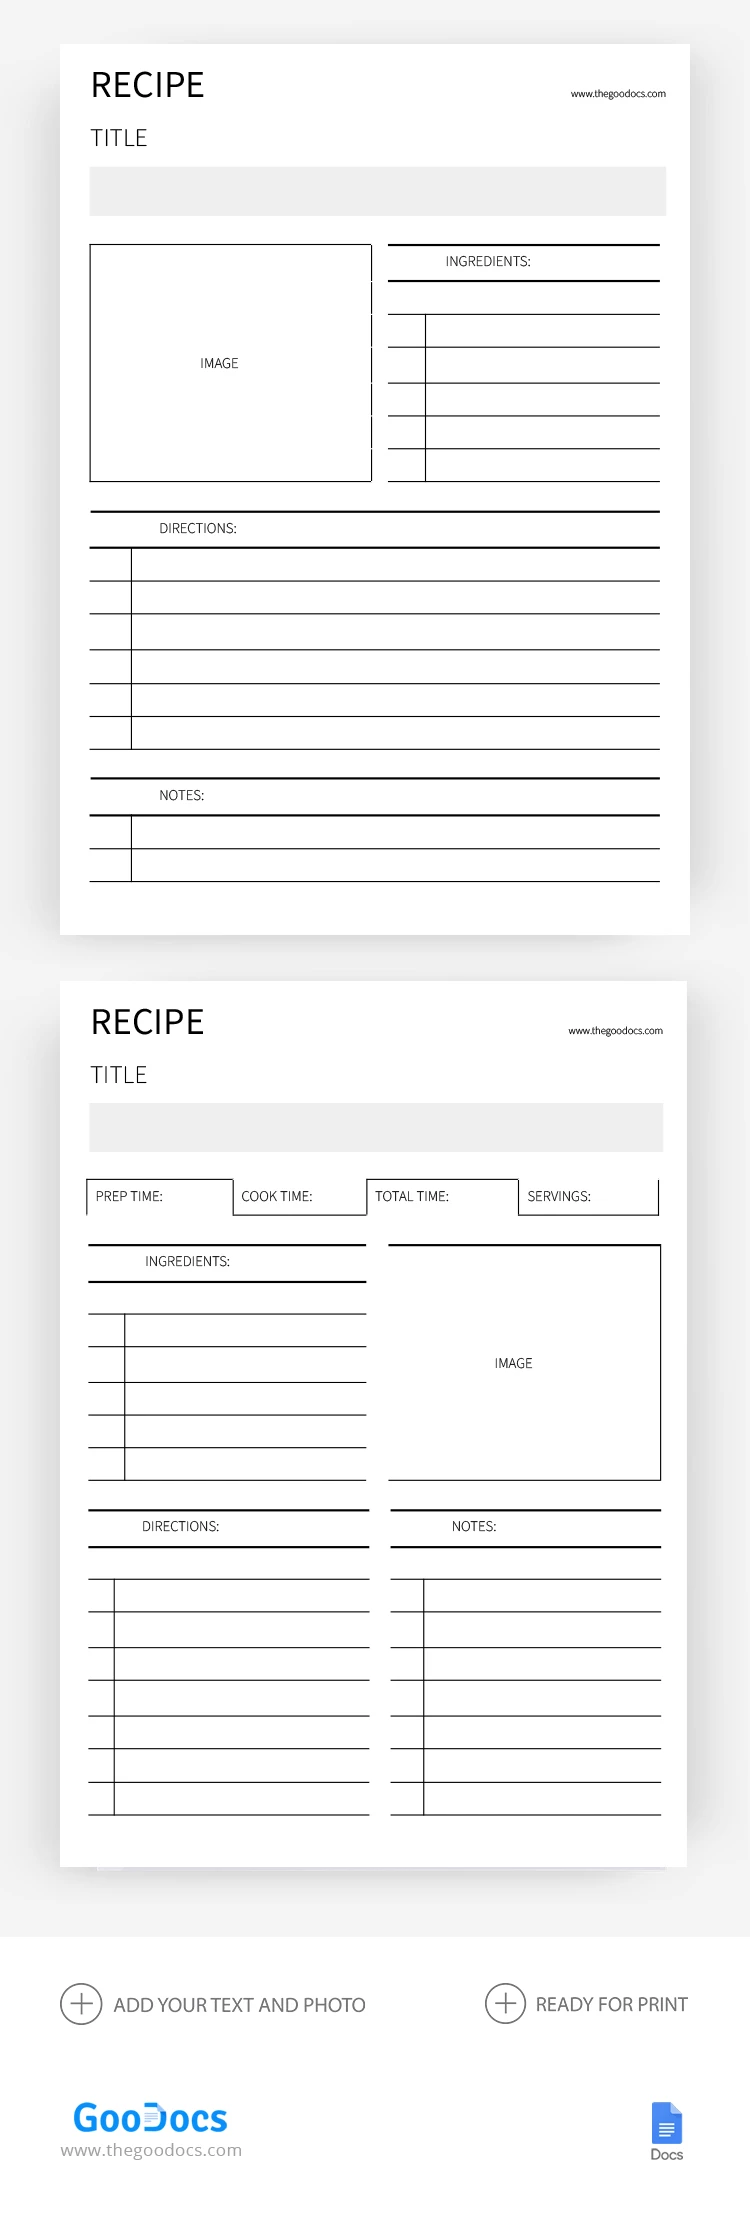 Libro de recetas en blanco - free Google Docs Template - 10068574